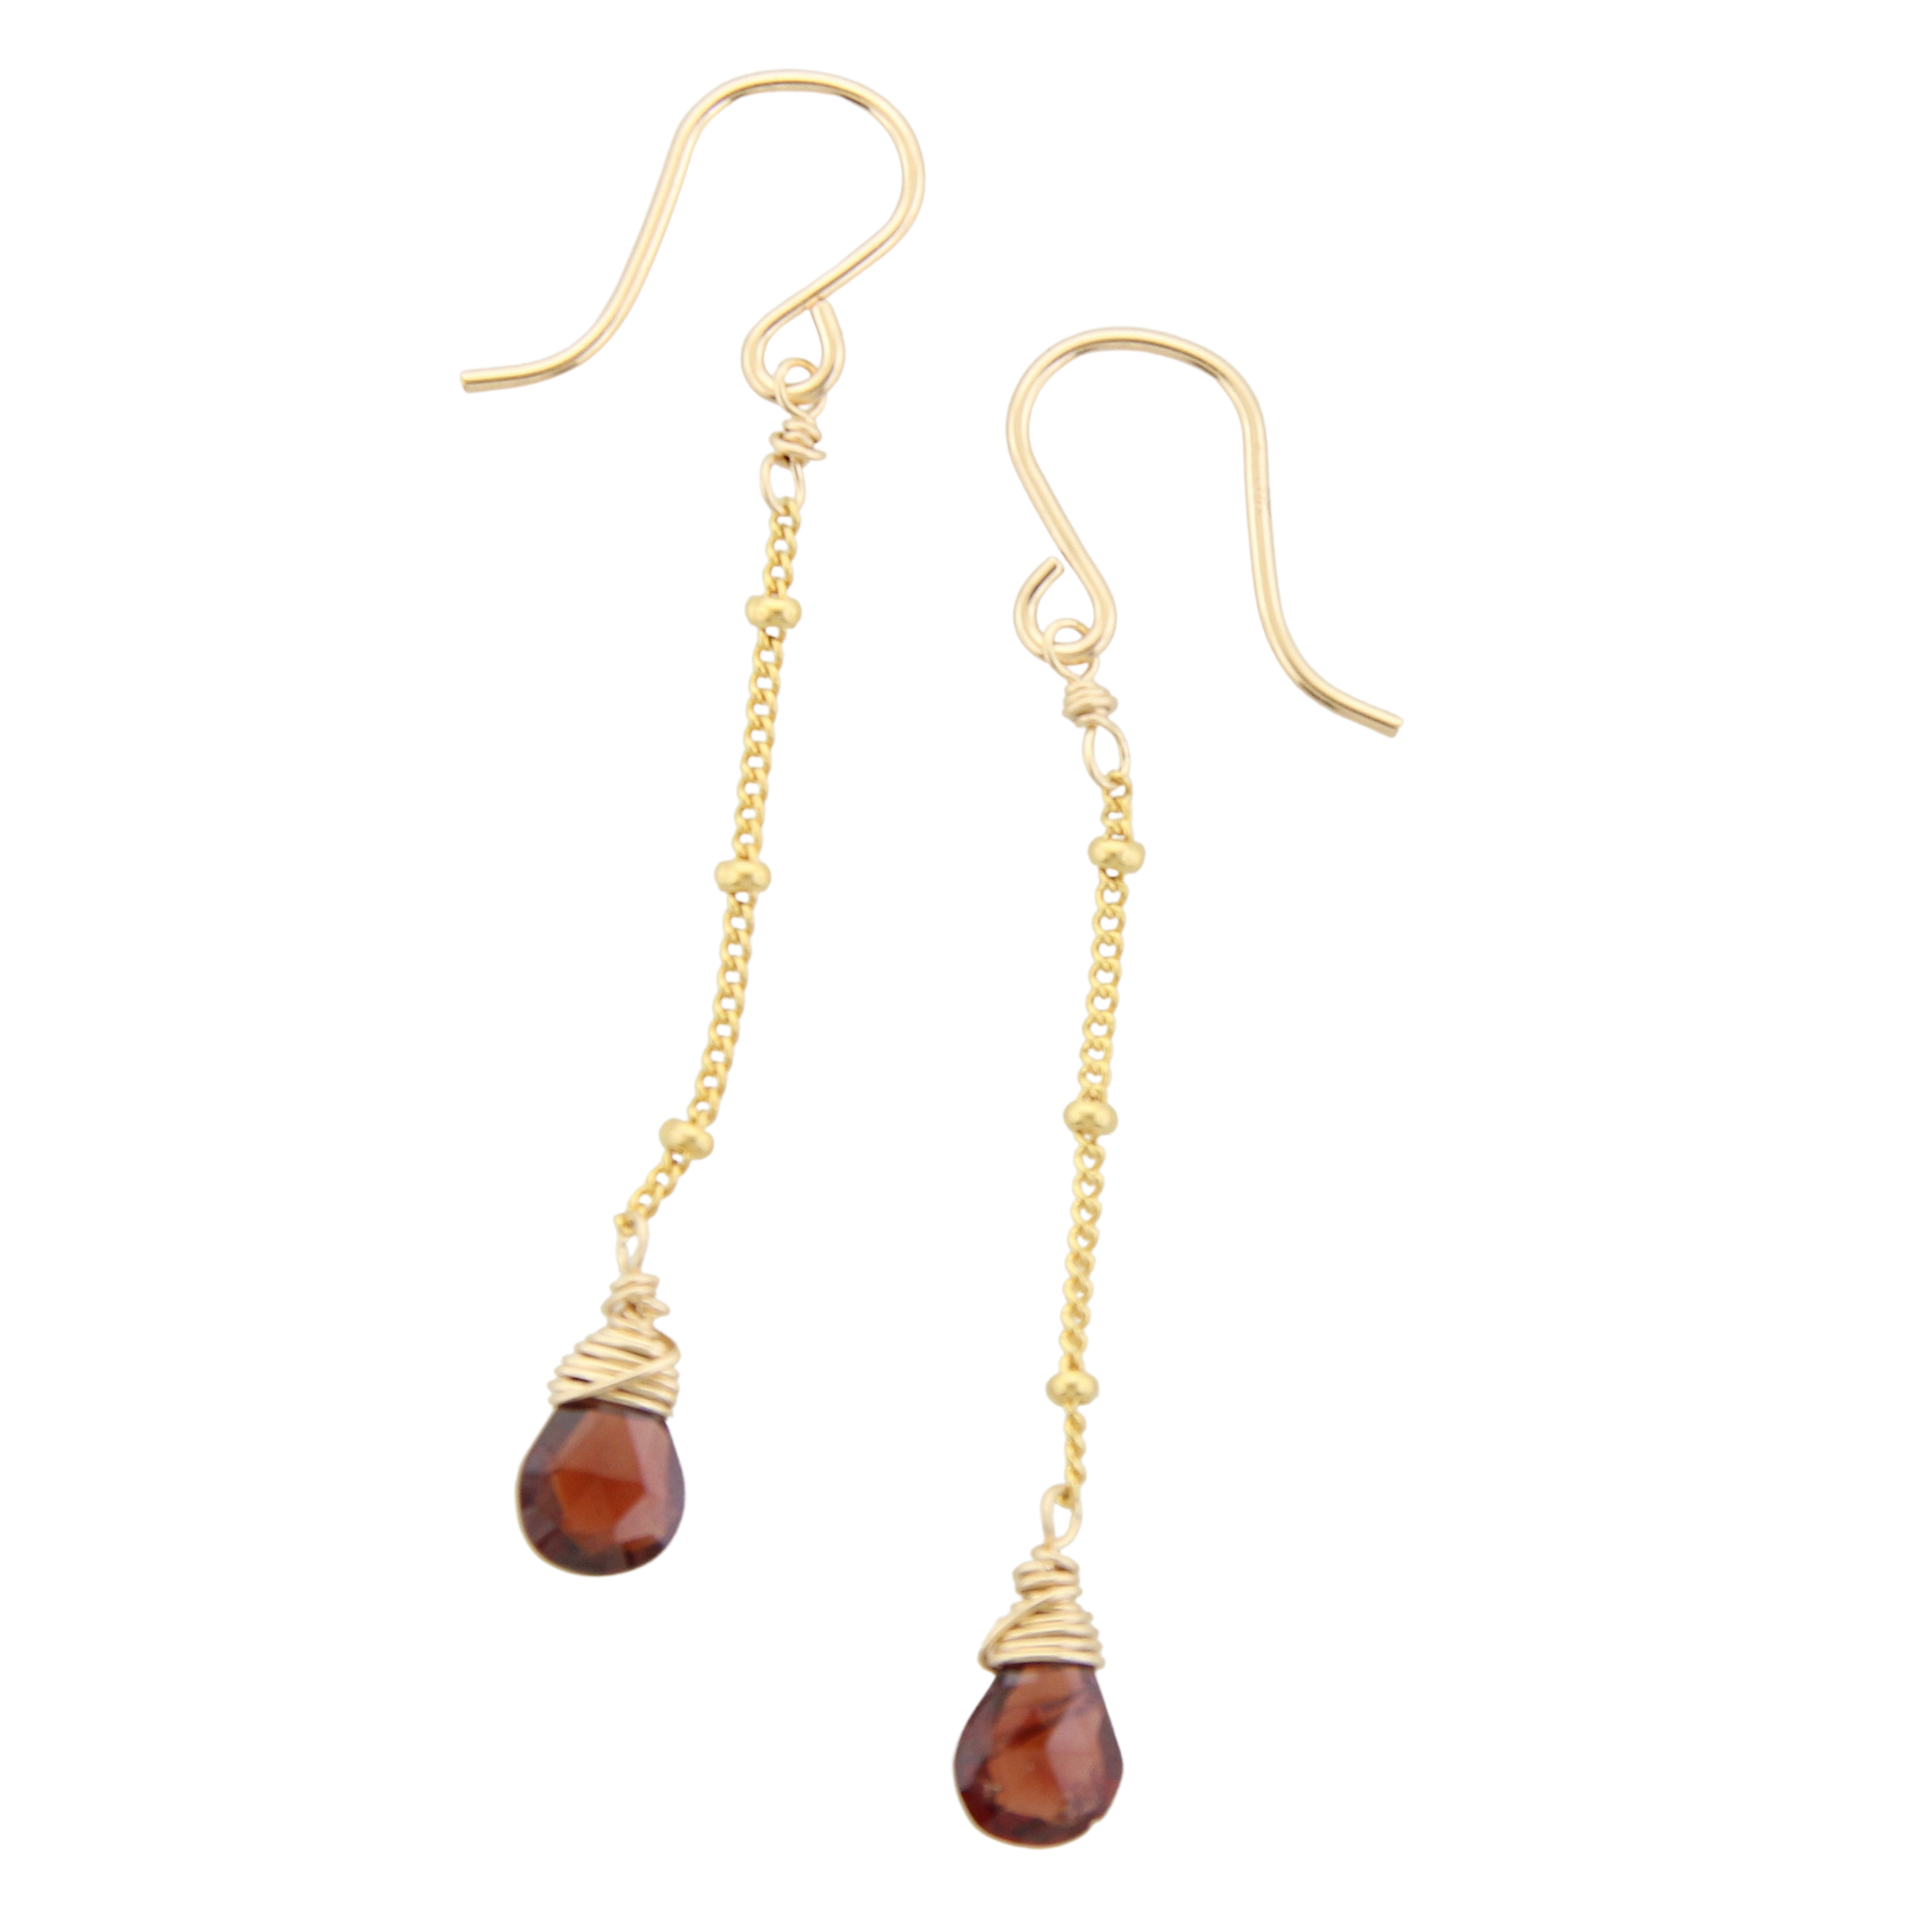 Gemstone Dangle Earrings - Garnet